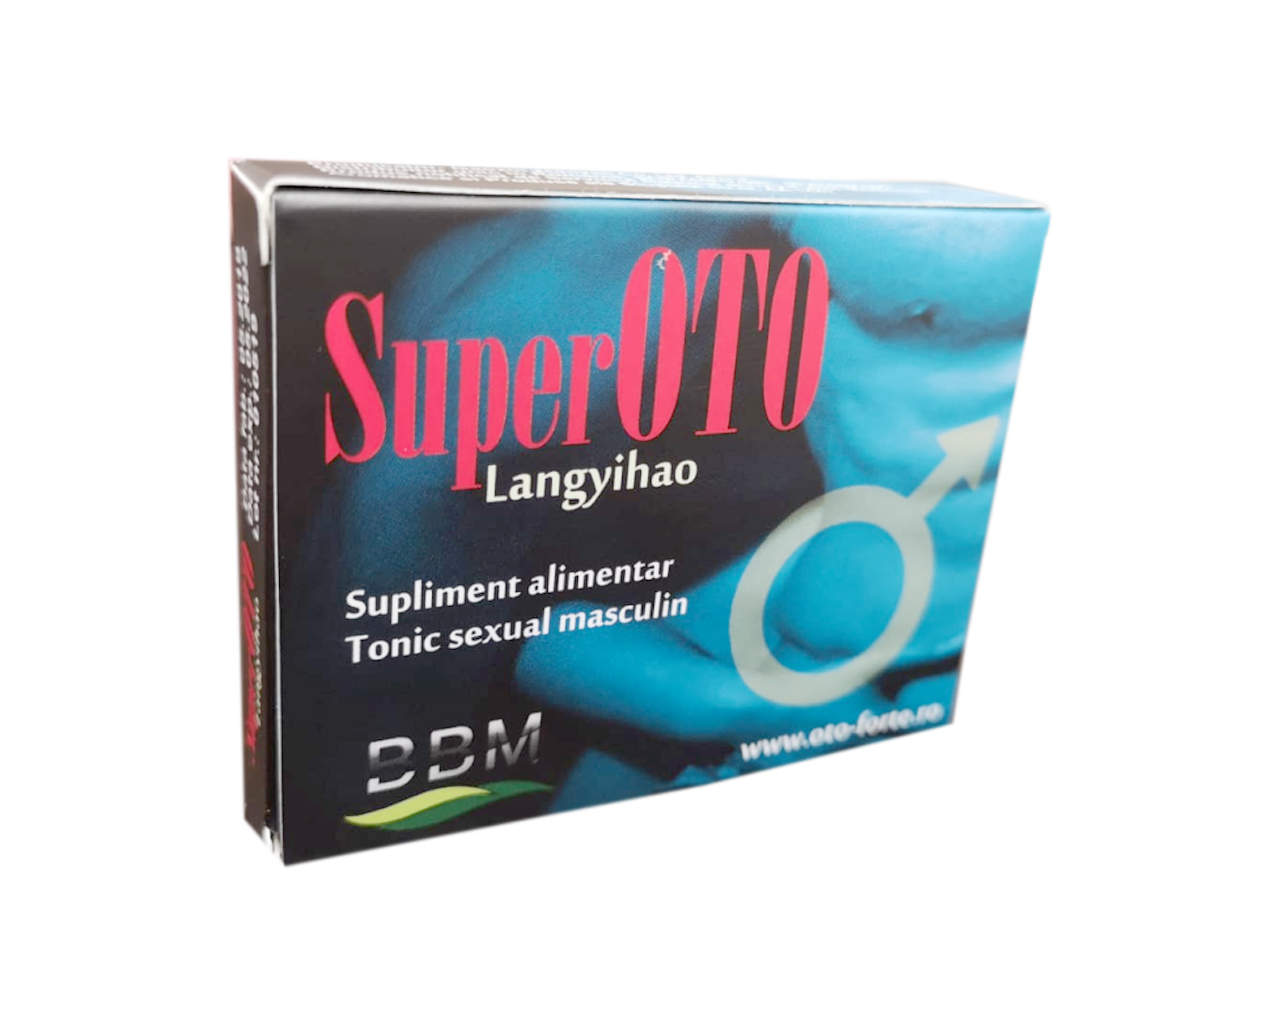 Super OTO Langyihao – pentru cresterea performantelor sexuale – 4 tablete